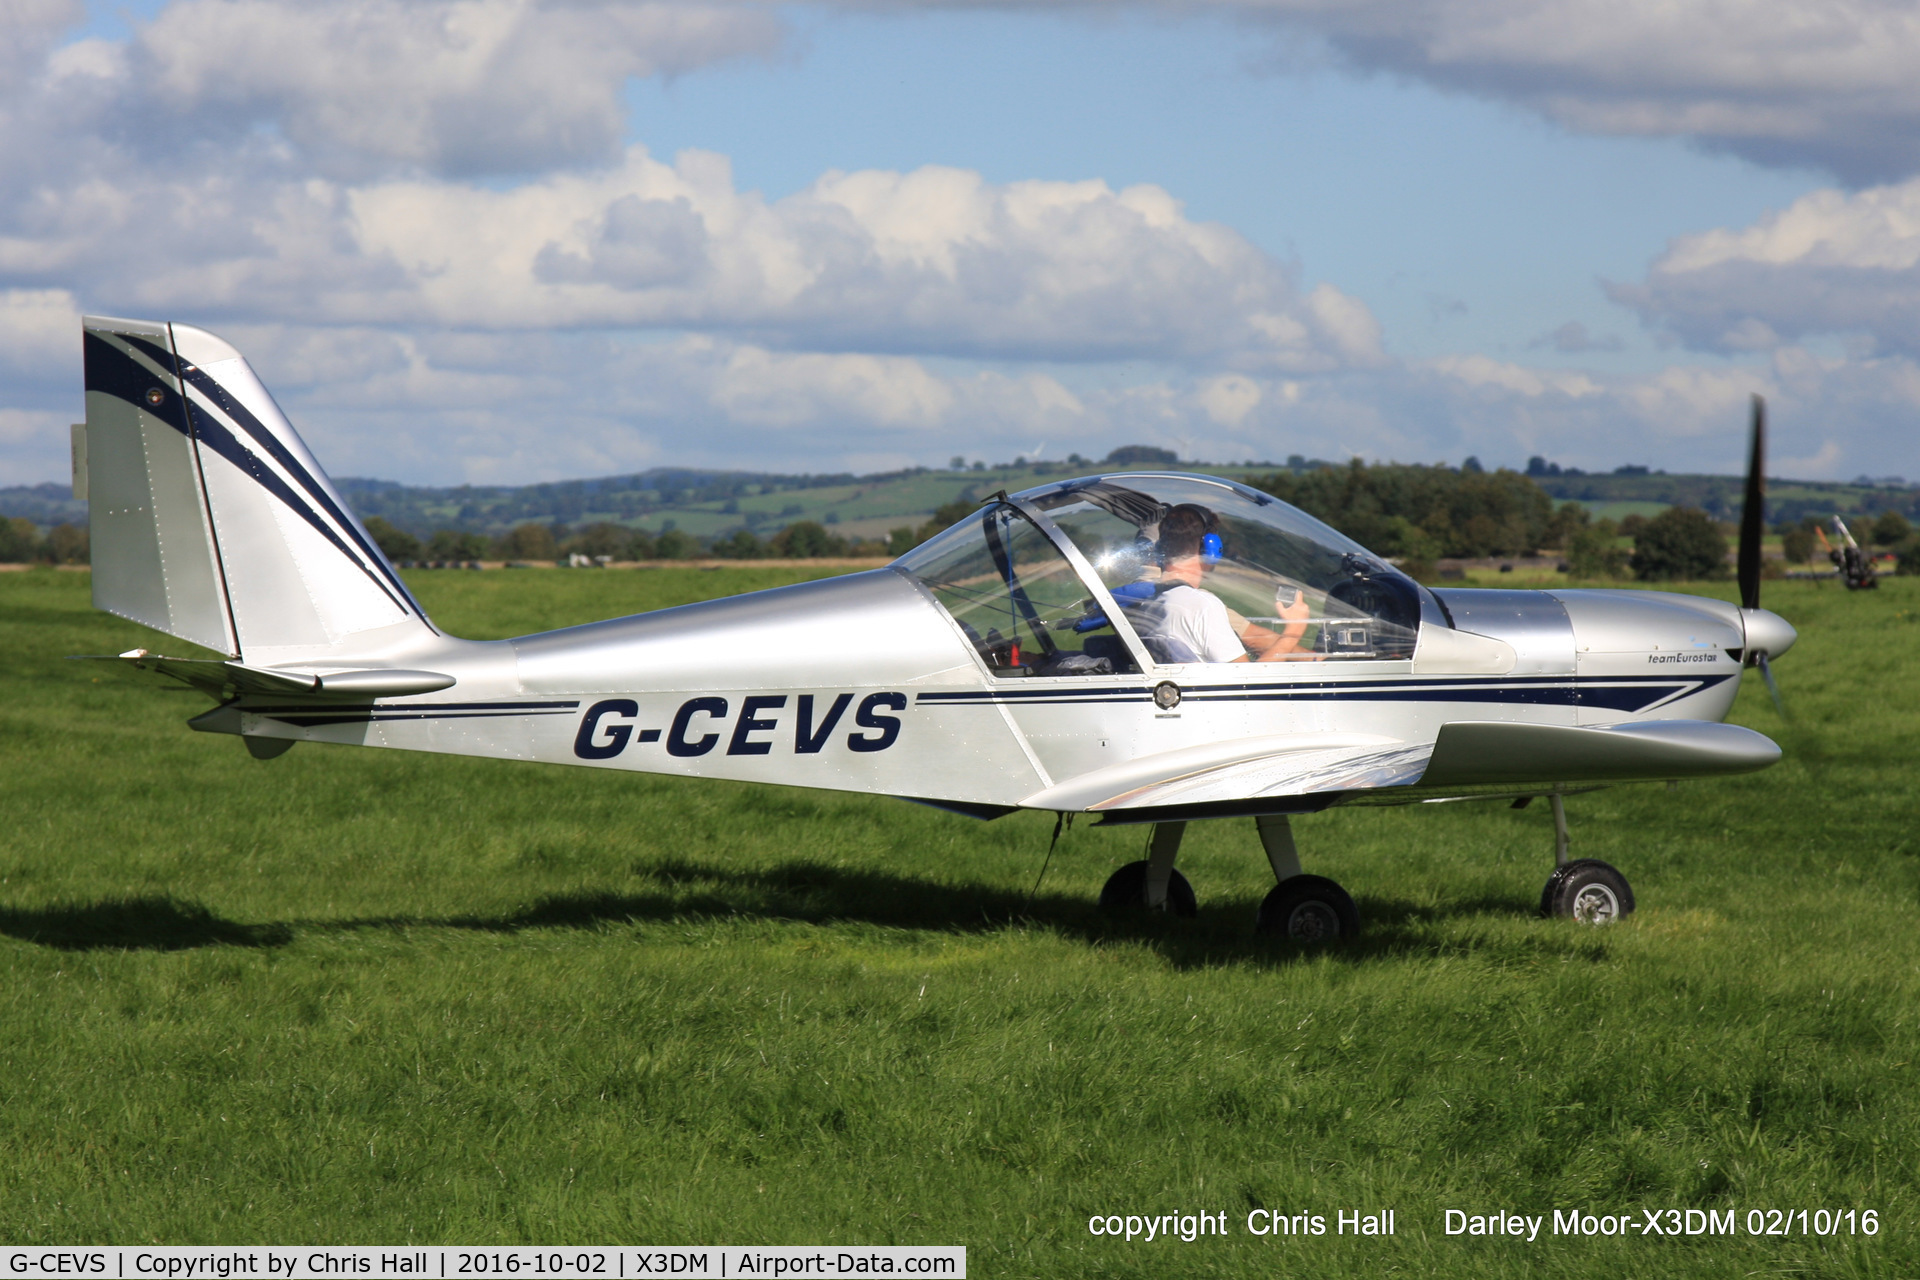 G-CEVS, 2007 Cosmik EV-97 TeamEurostar UK C/N 3102, at Darley Moor Airfield